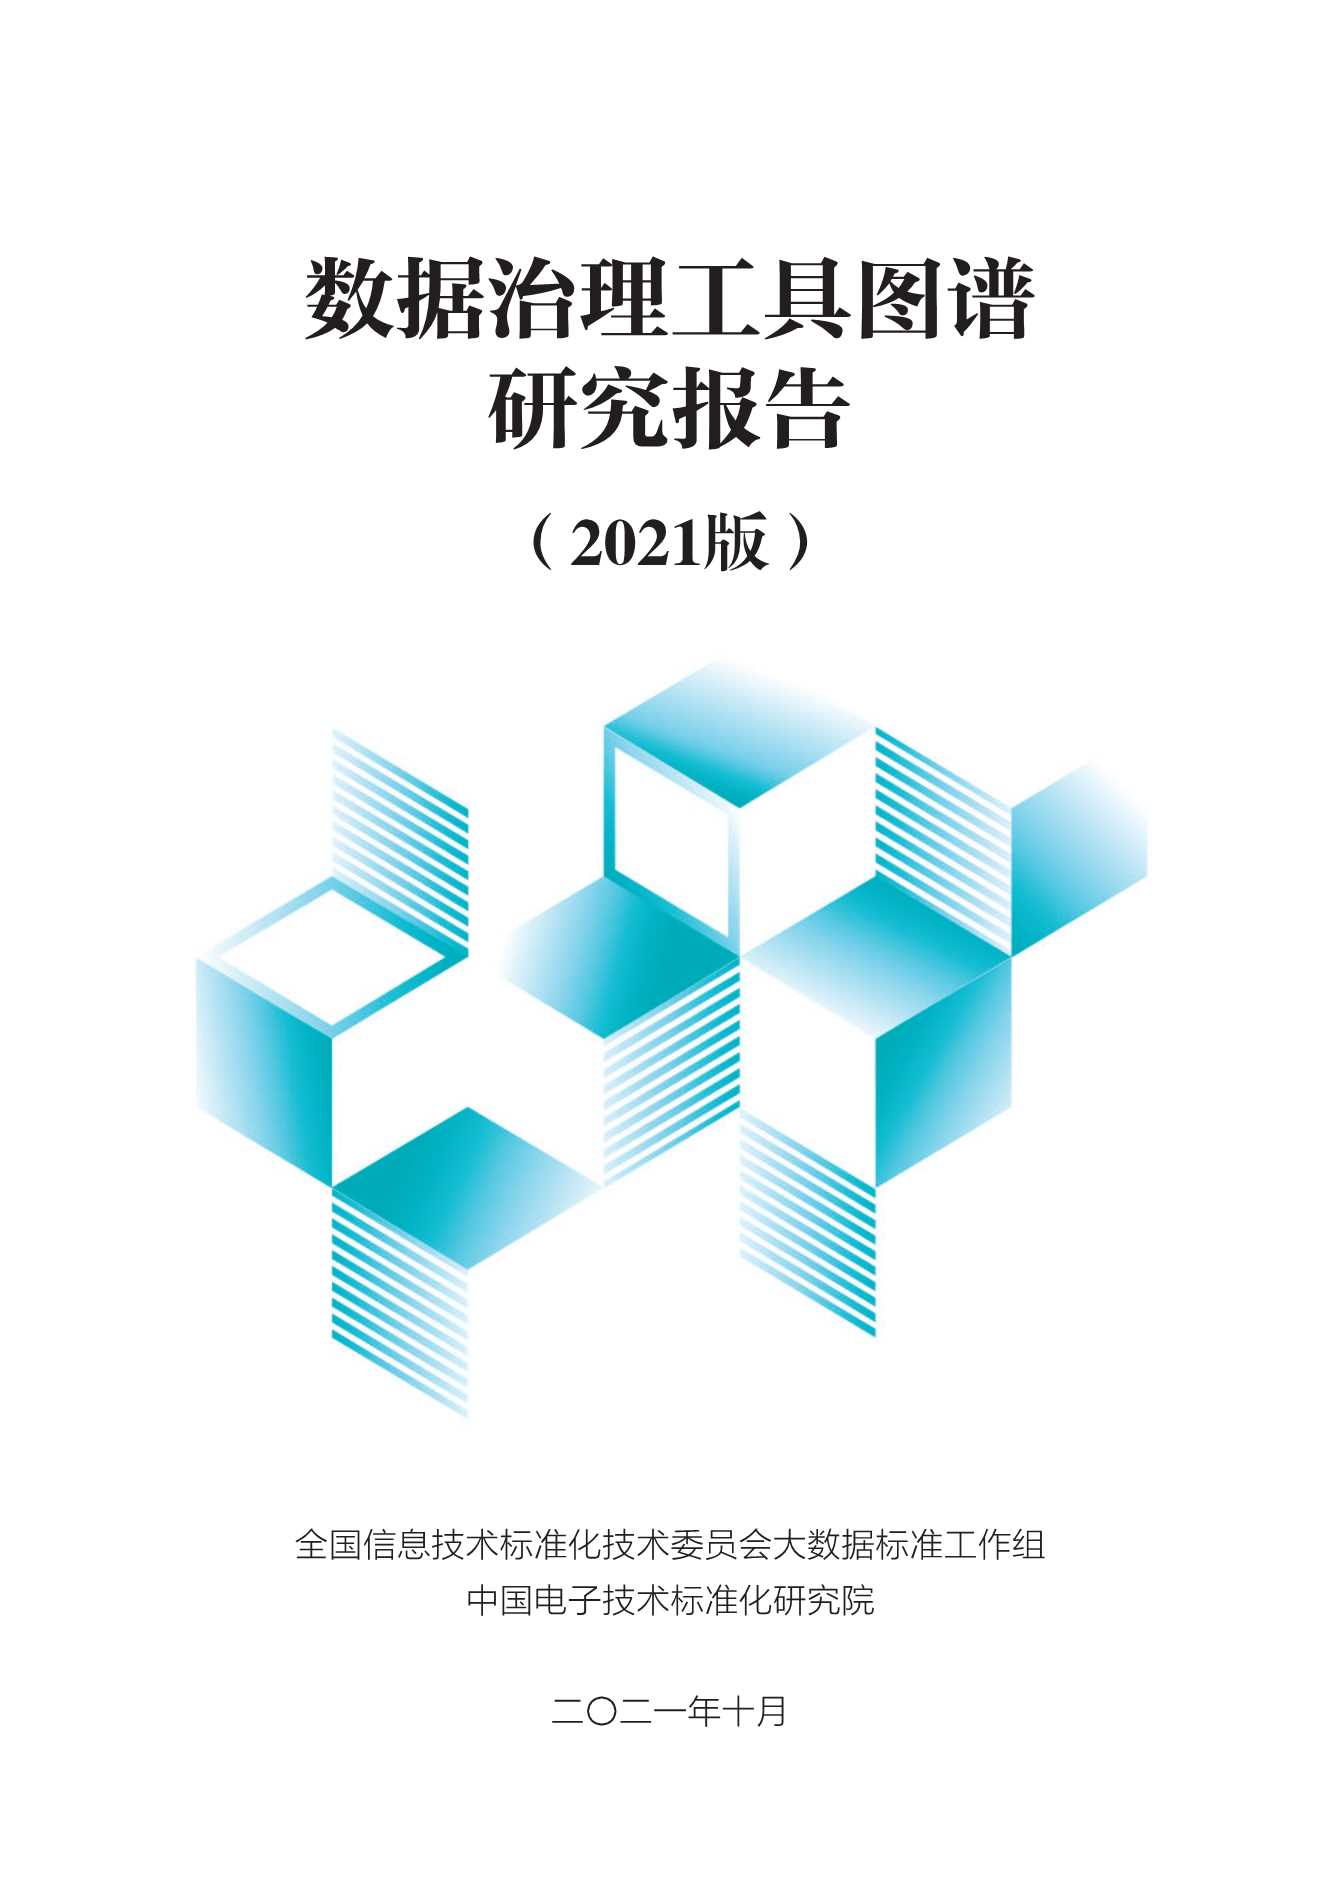 中国电子技术标准化研究院-数据治理工具图谱研究报告（2021版）-2021.11-94页